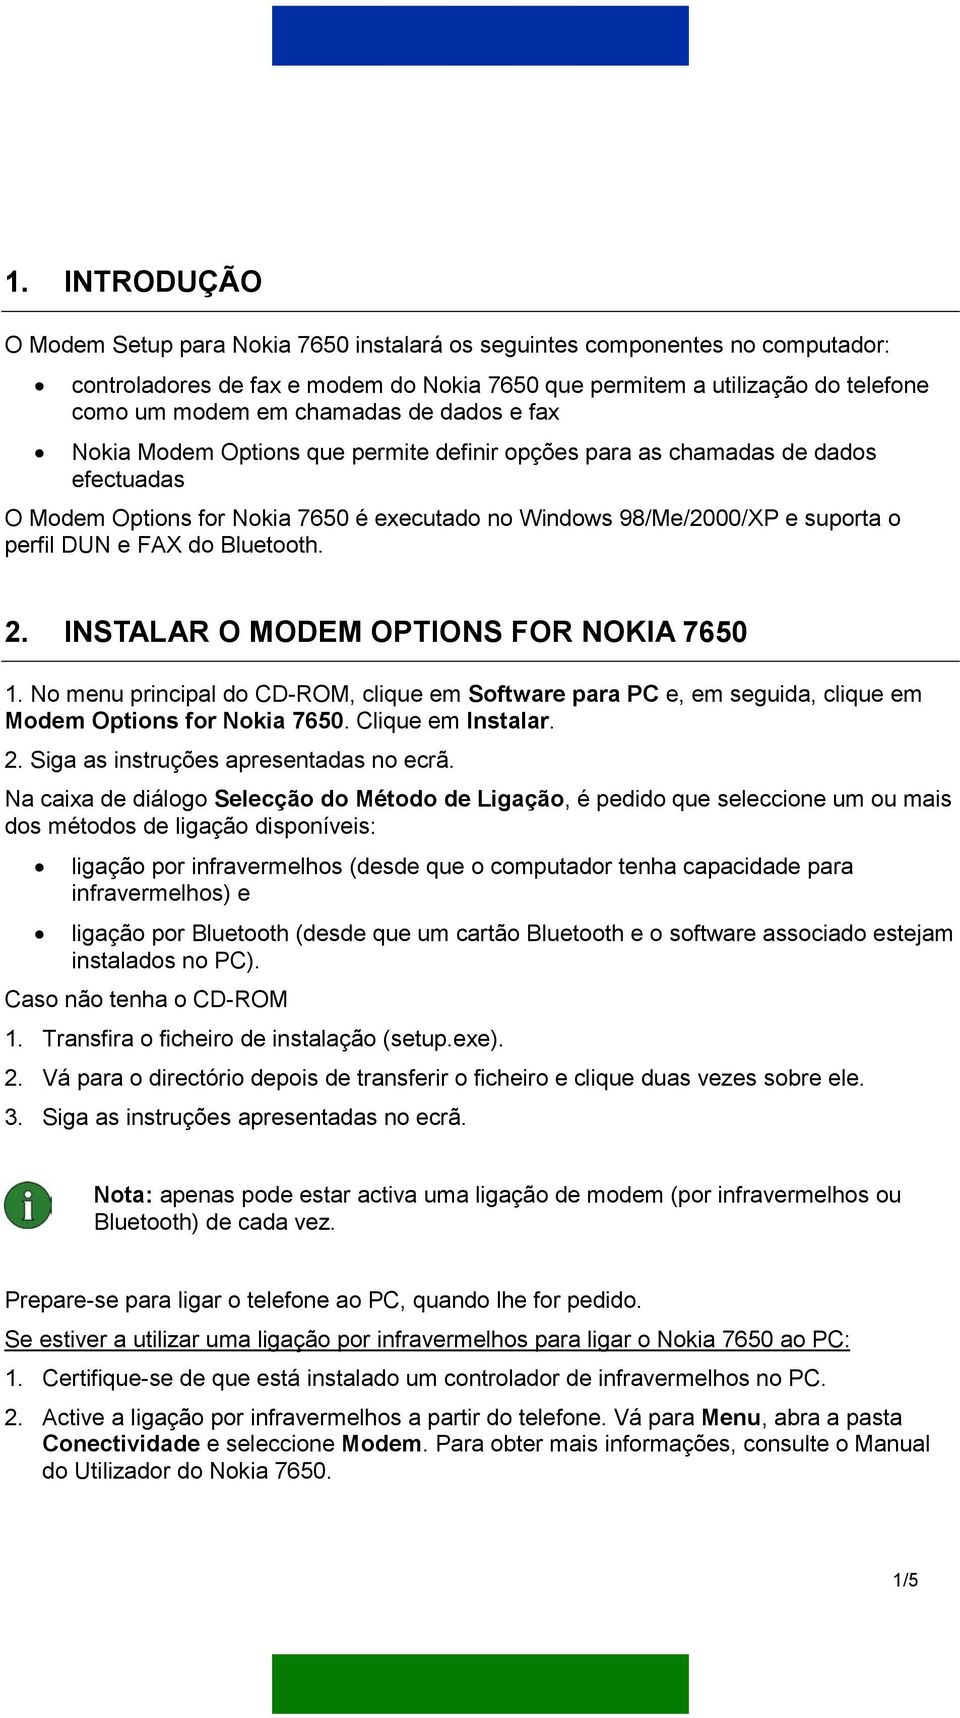 e FAX do Bluetooth. 2. INSTALAR O MODEM OPTIONS FOR NOKIA 7650 1. No menu principal do CD-ROM, clique em Software para PC e, em seguida, clique em Modem Options for Nokia 7650. Clique em Instalar. 2. Siga as instruções apresentadas no ecrã.